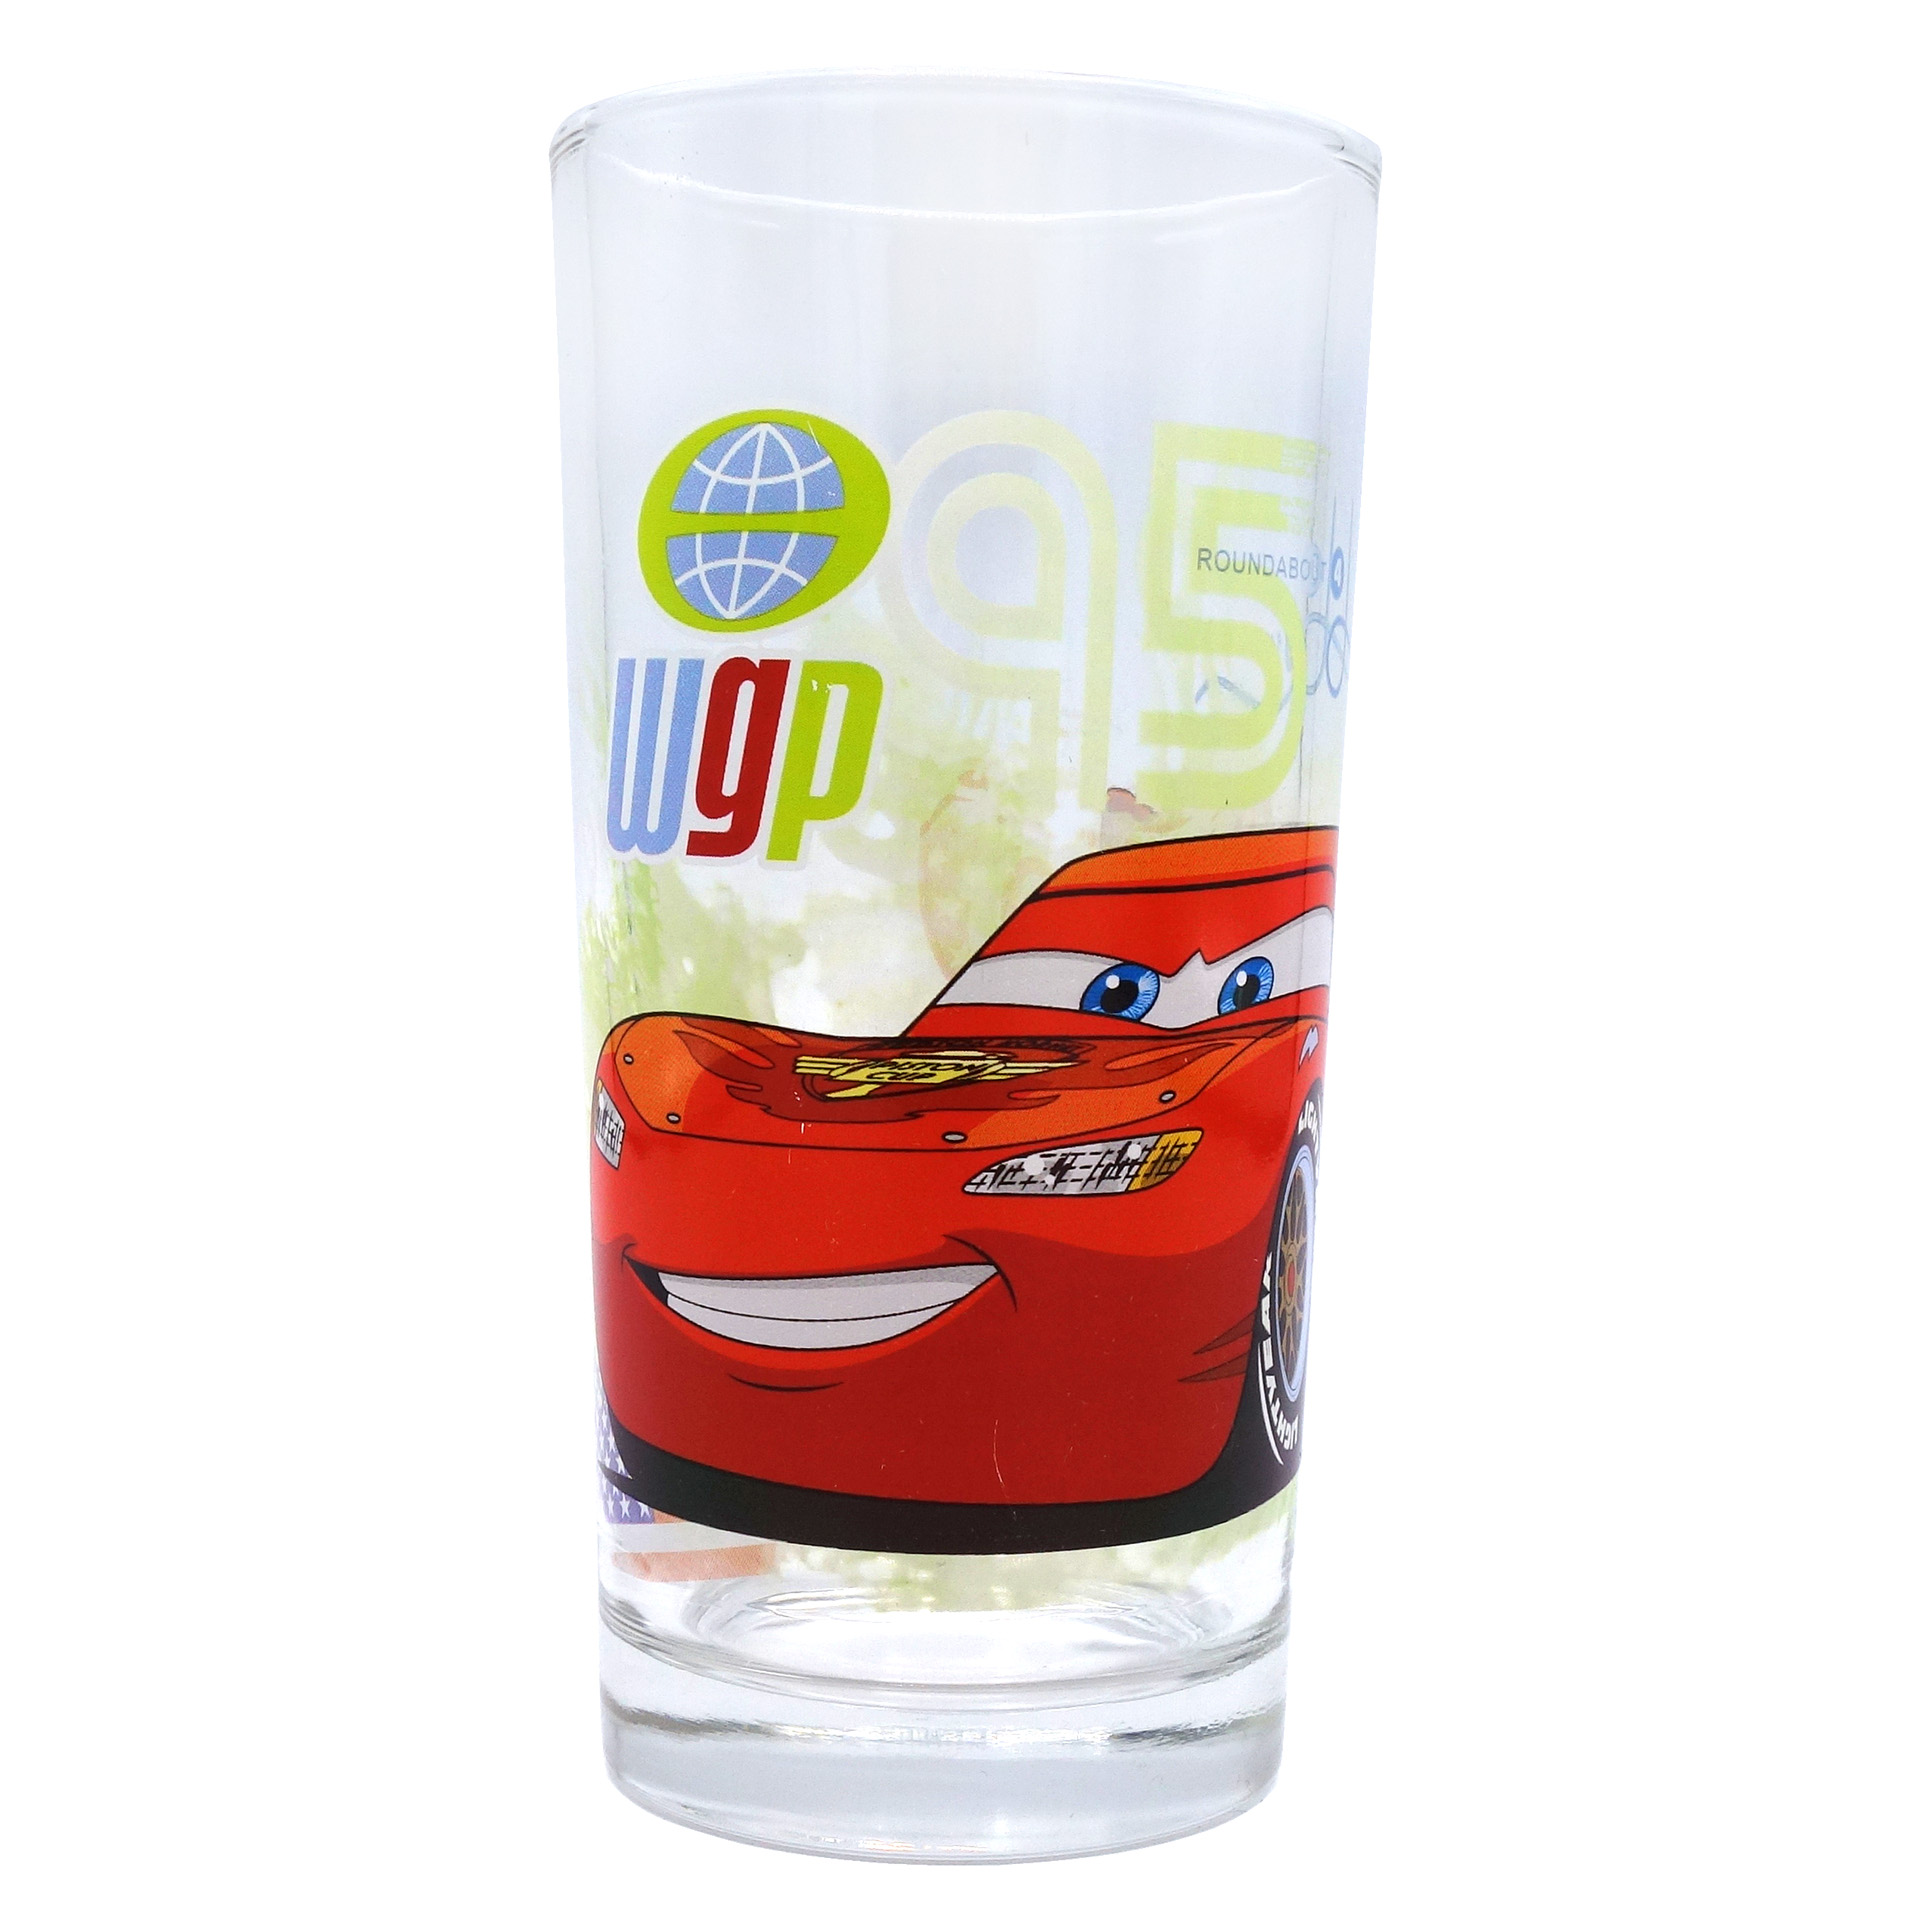 Cars Trinkglas "95" wgp